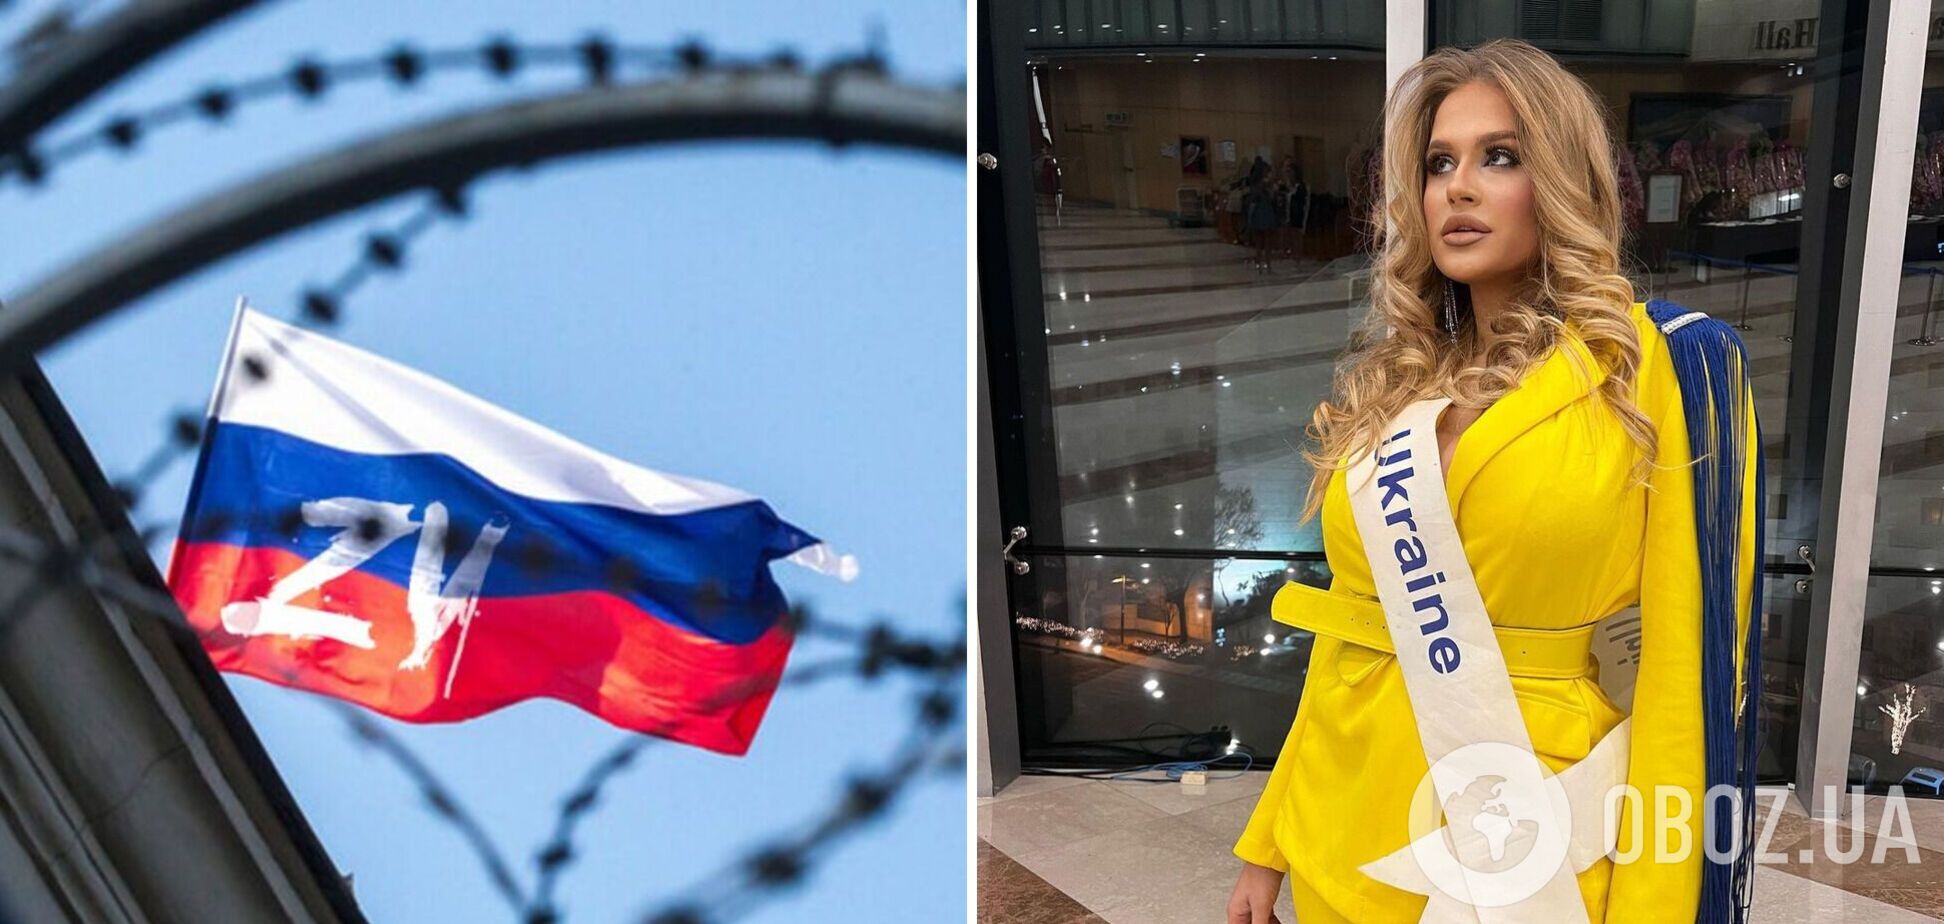 Называли нацисткой и заставляли фотографироваться с россиянкой: украинка шокировала подробностями о конкурсе 'Мисс Европа'